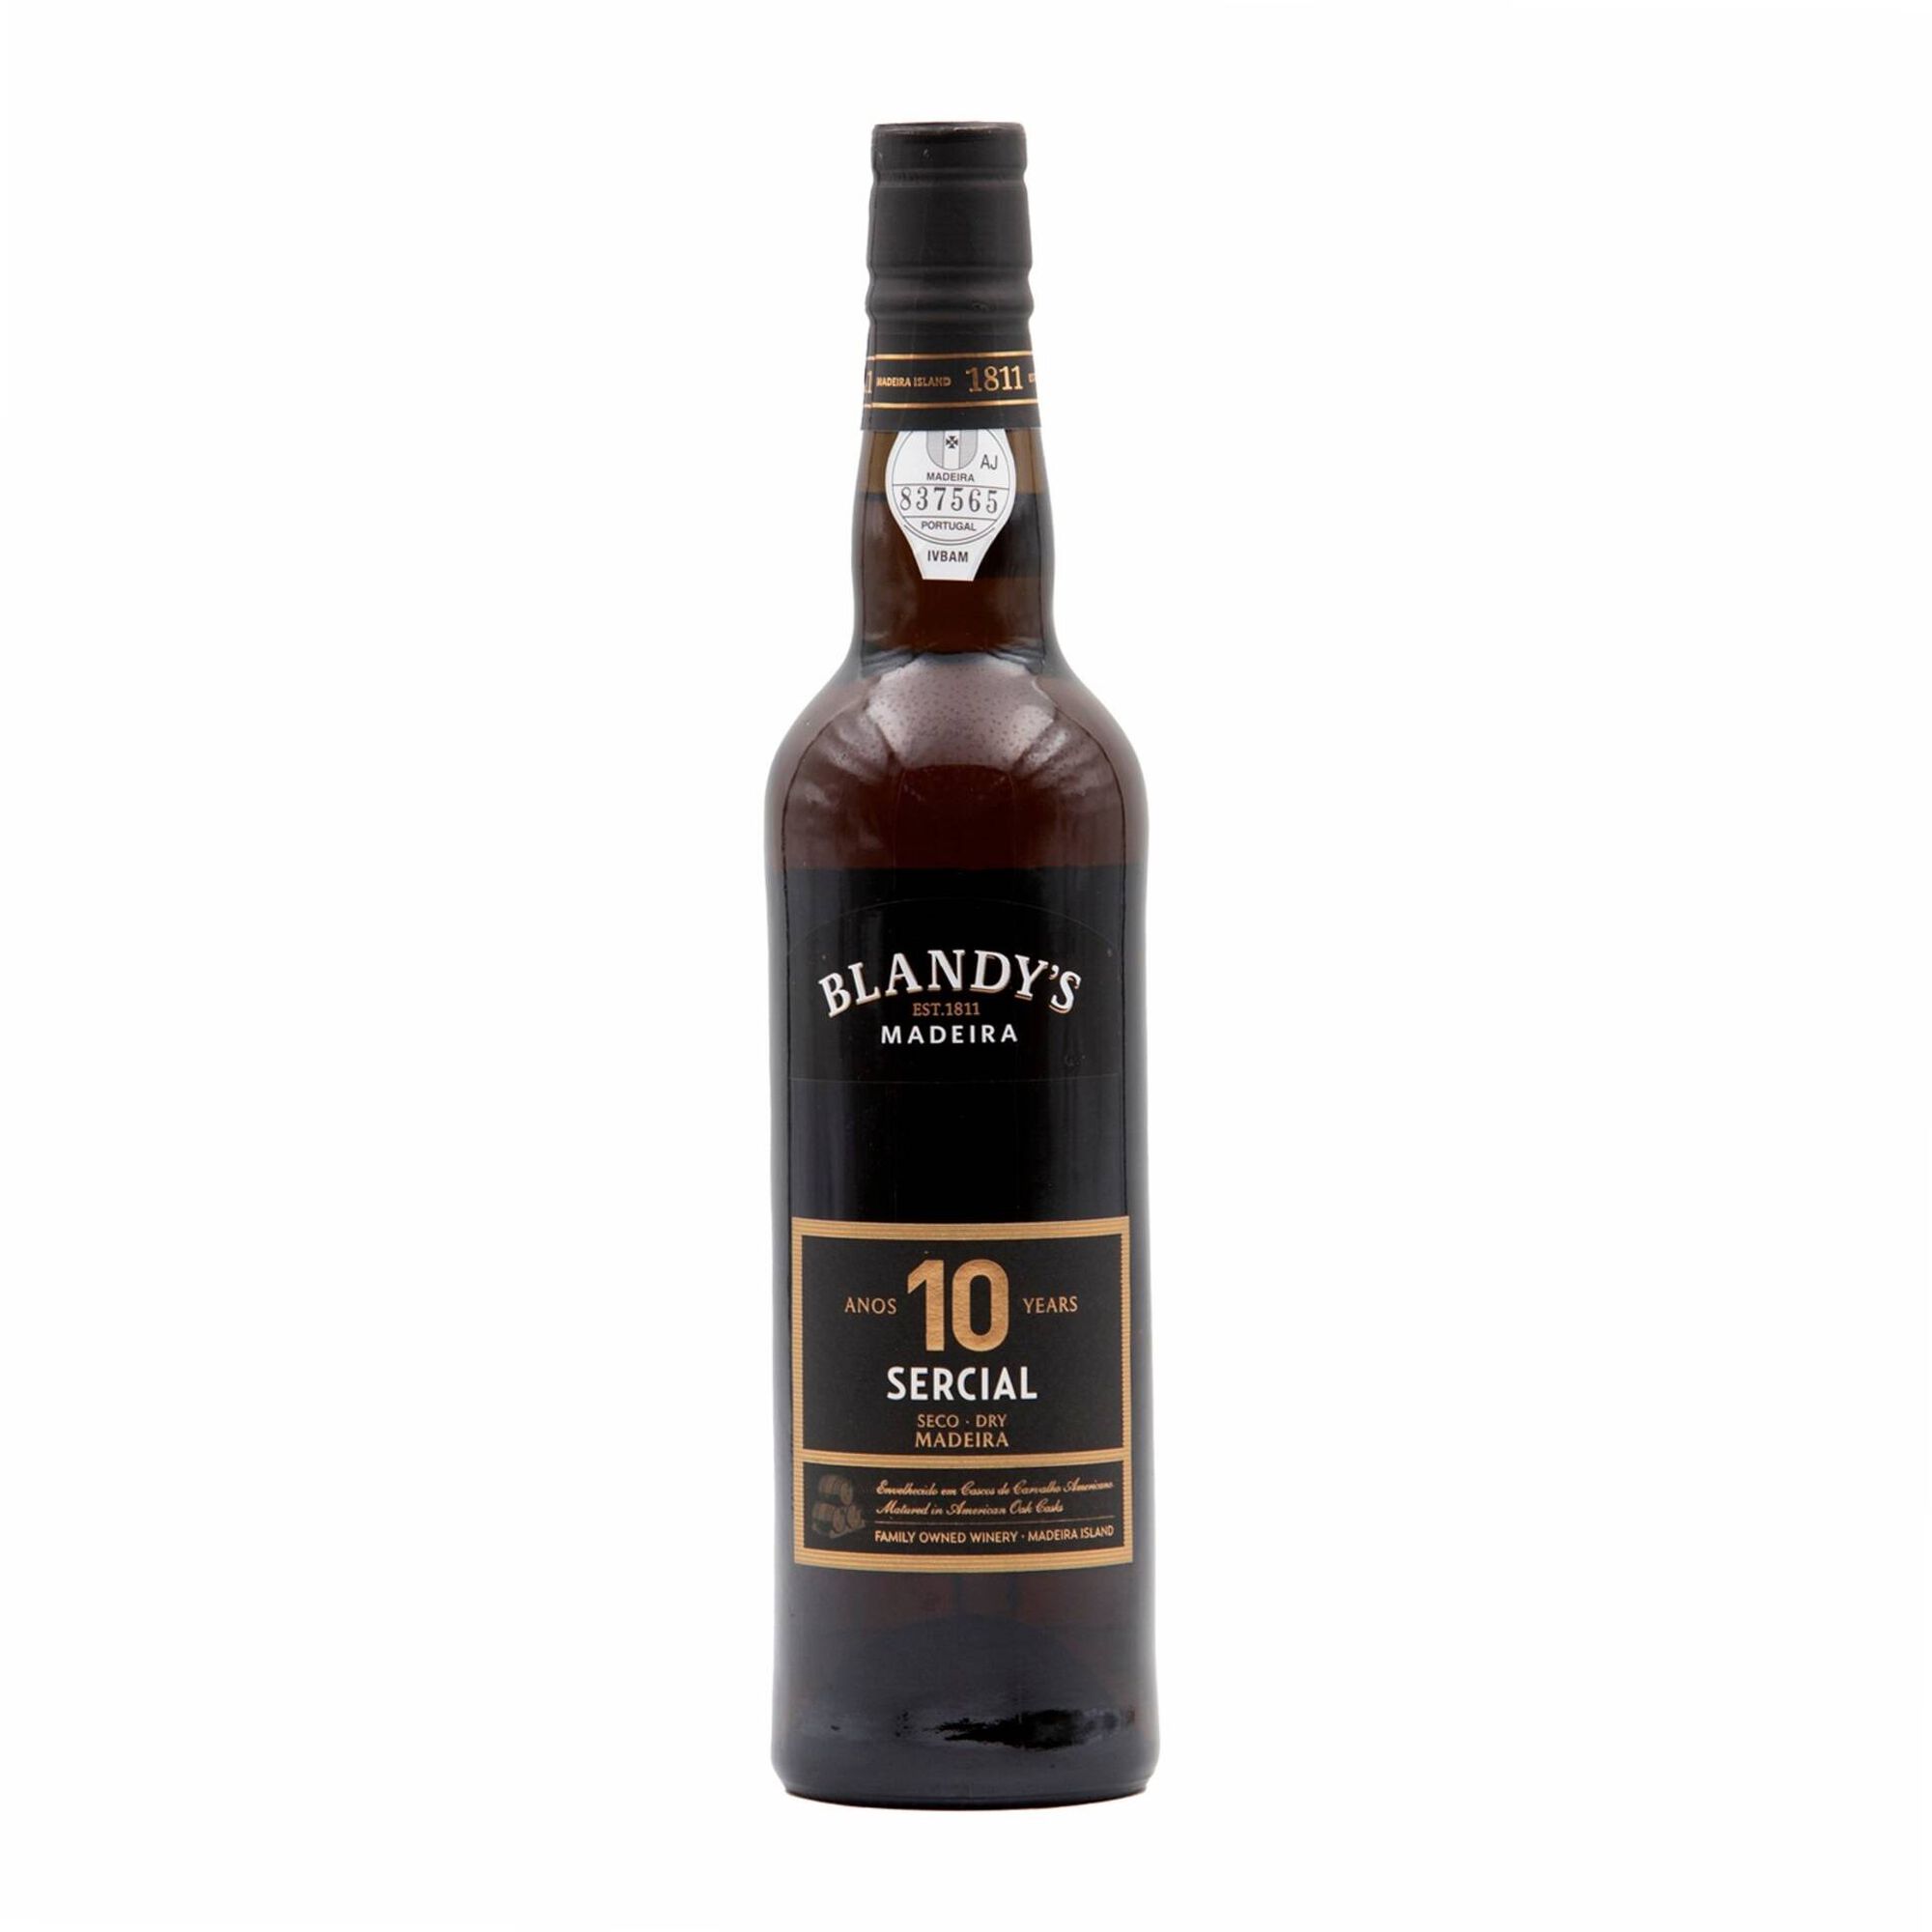 Blandy's 10 Anos Sercial Vinho da Madeira Seco